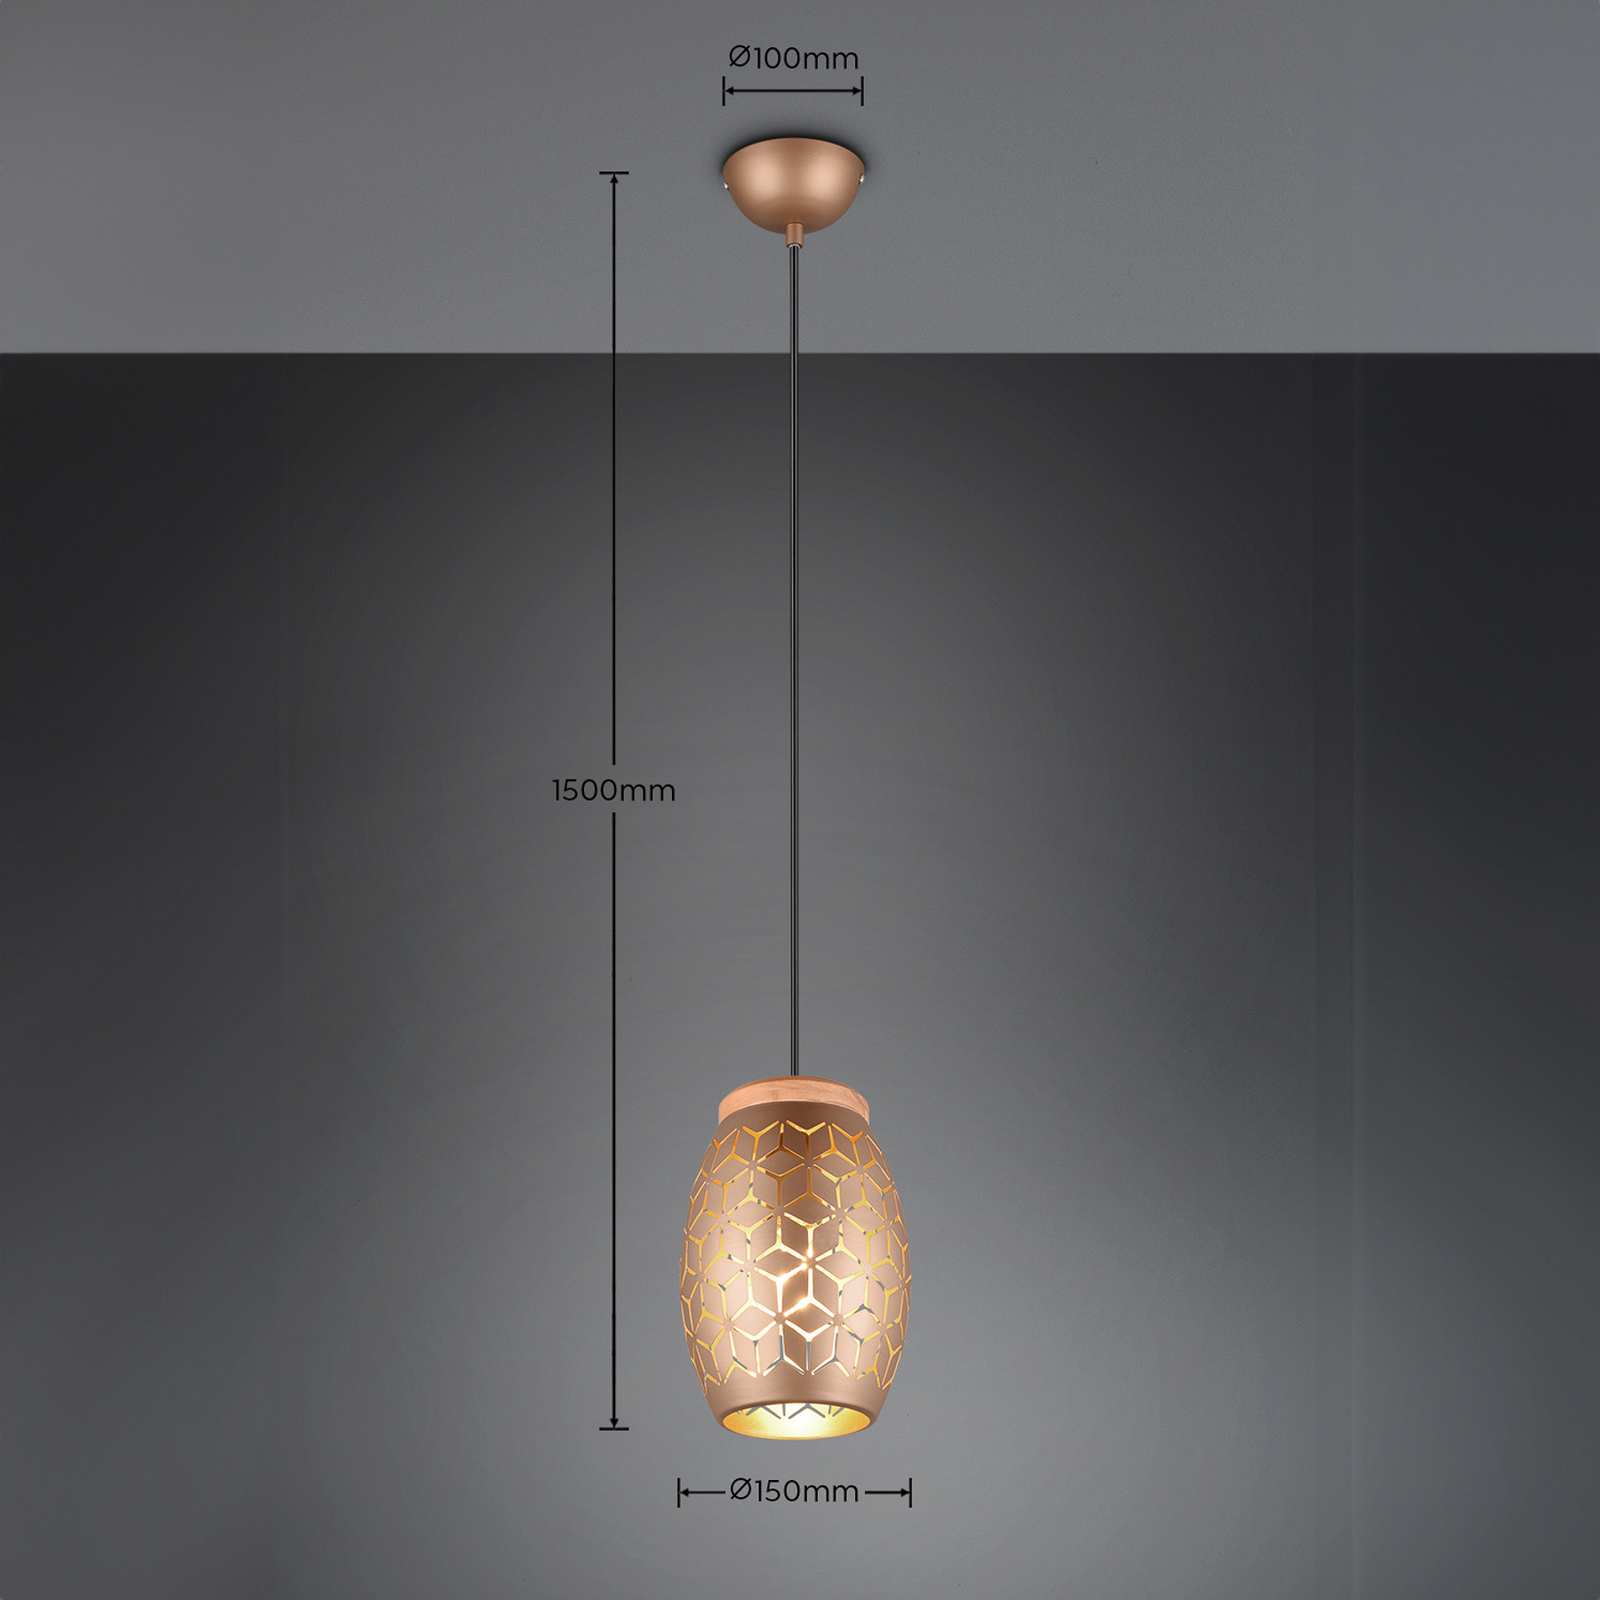 Bidar hängande lampa, Ø 15 cm, kaffebrun, metall